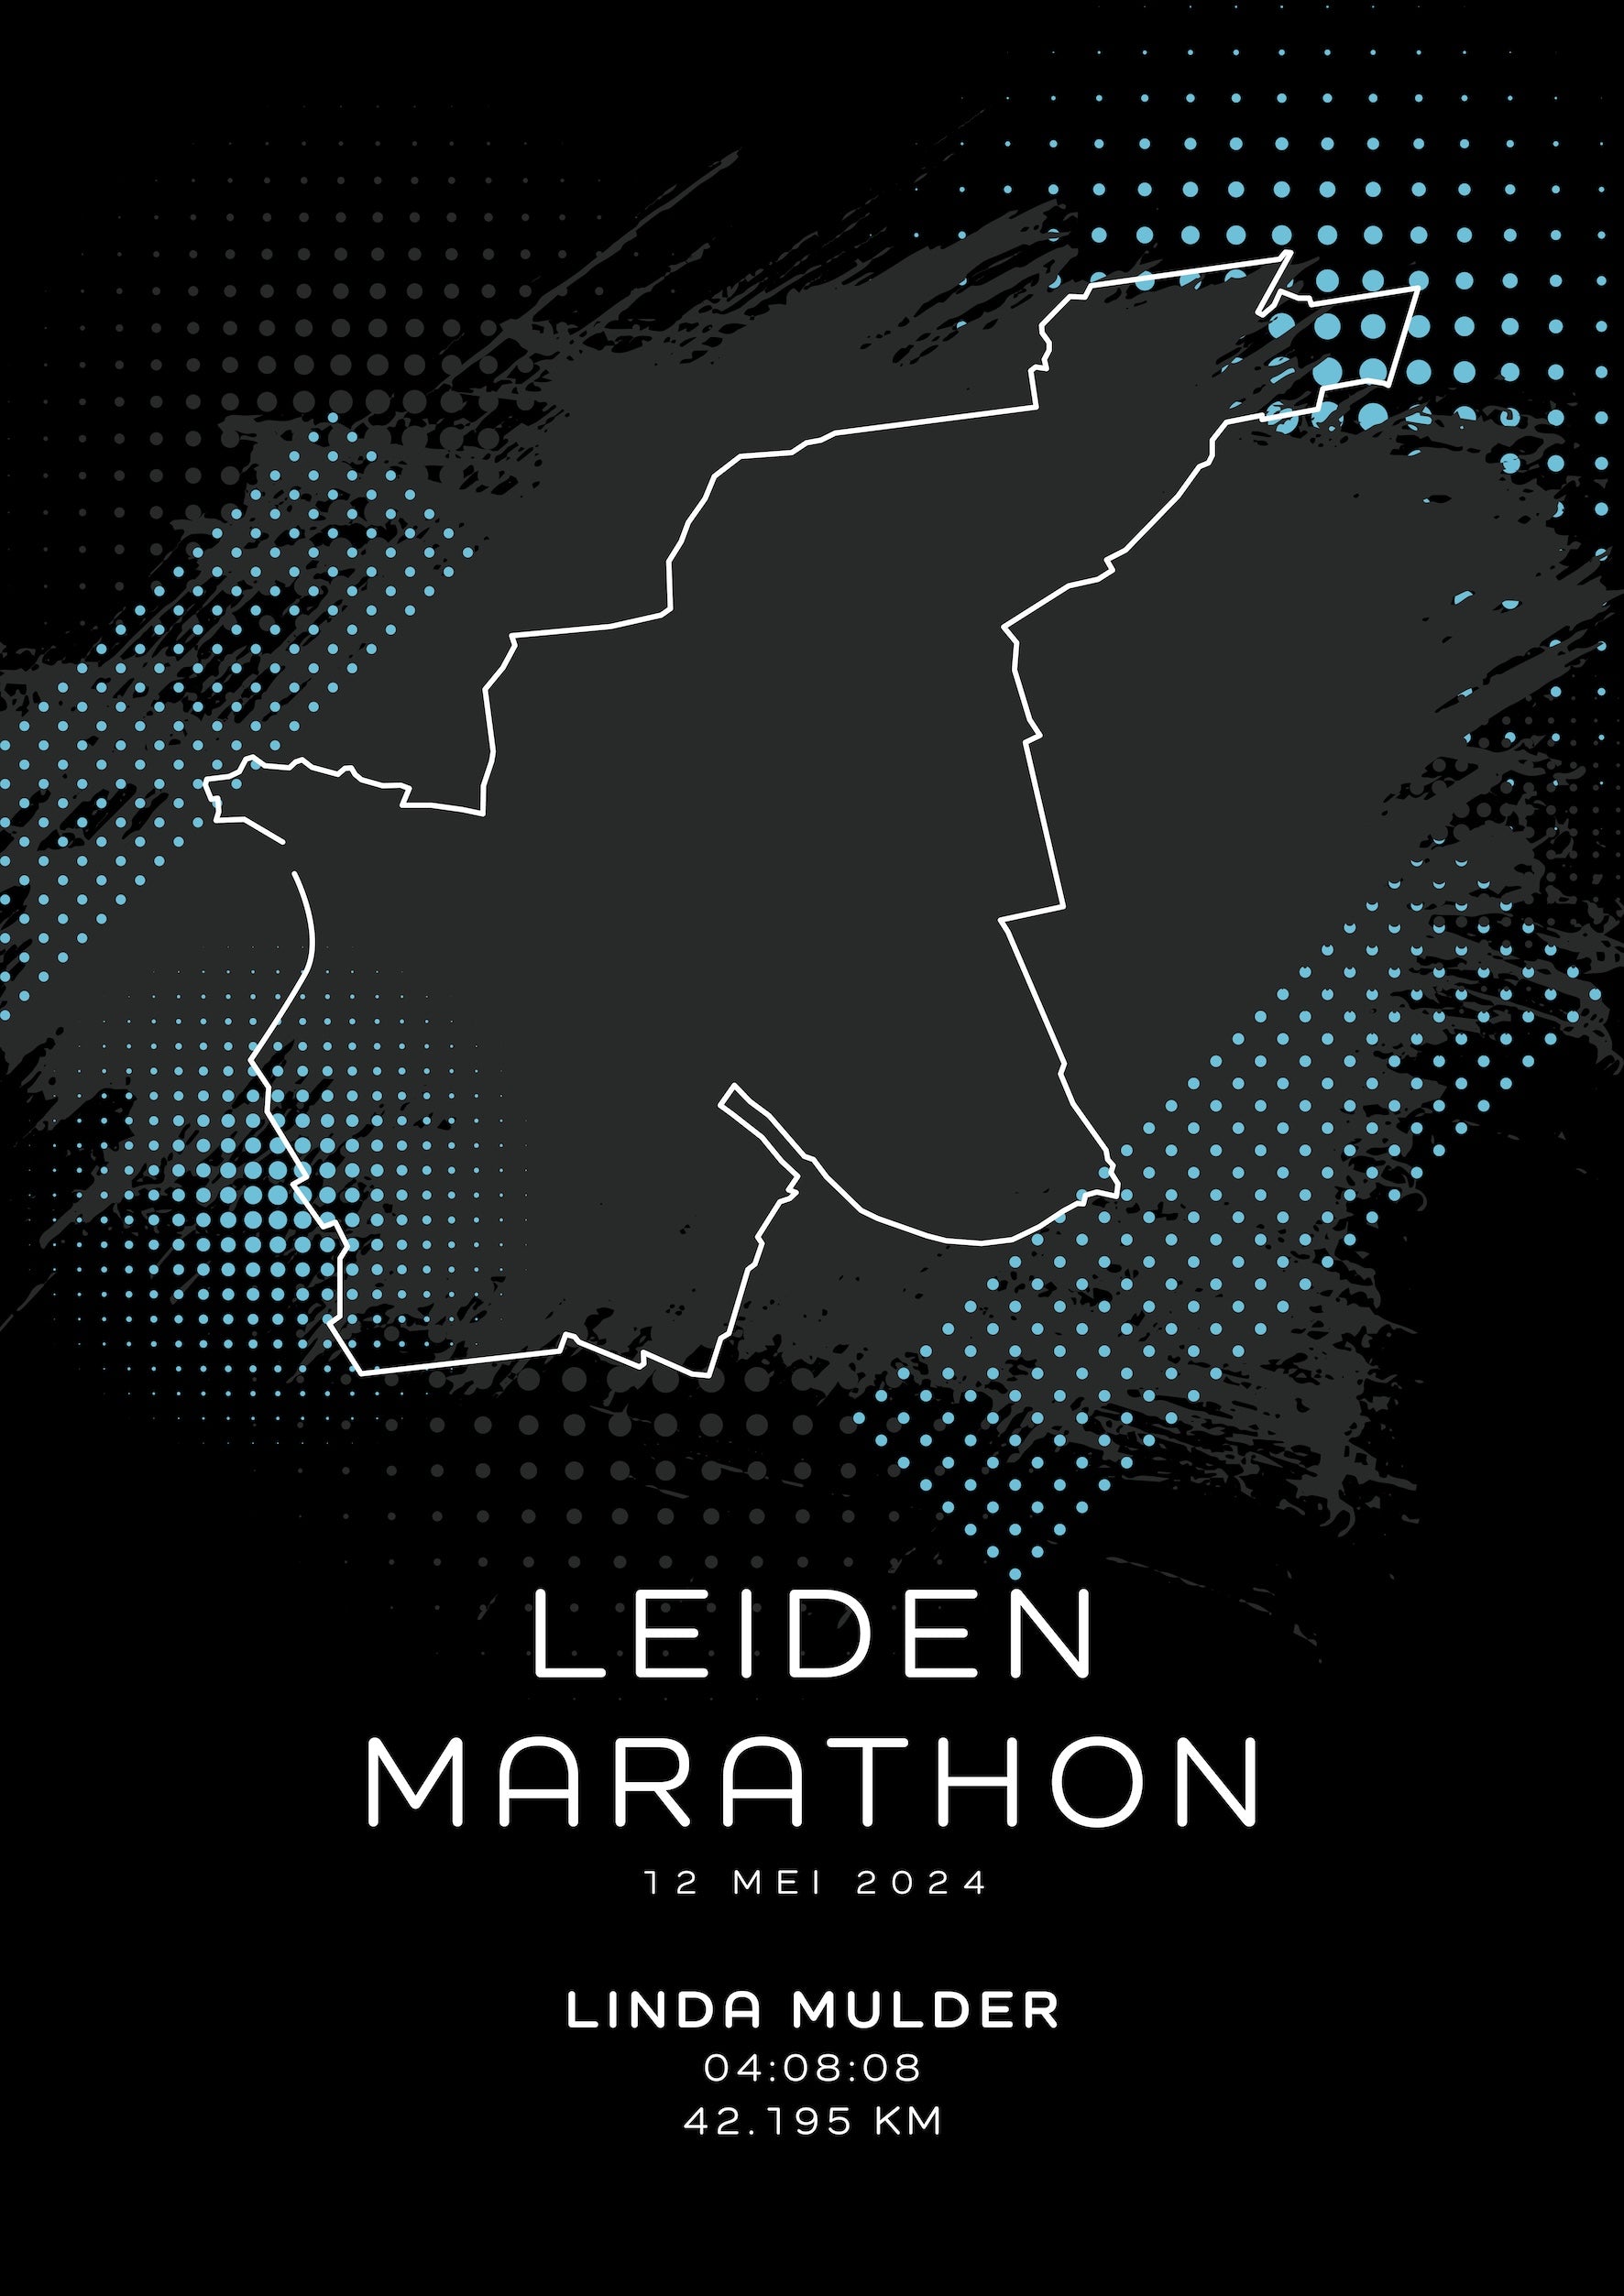 Leiden Marathon - Modern Dark - Poster